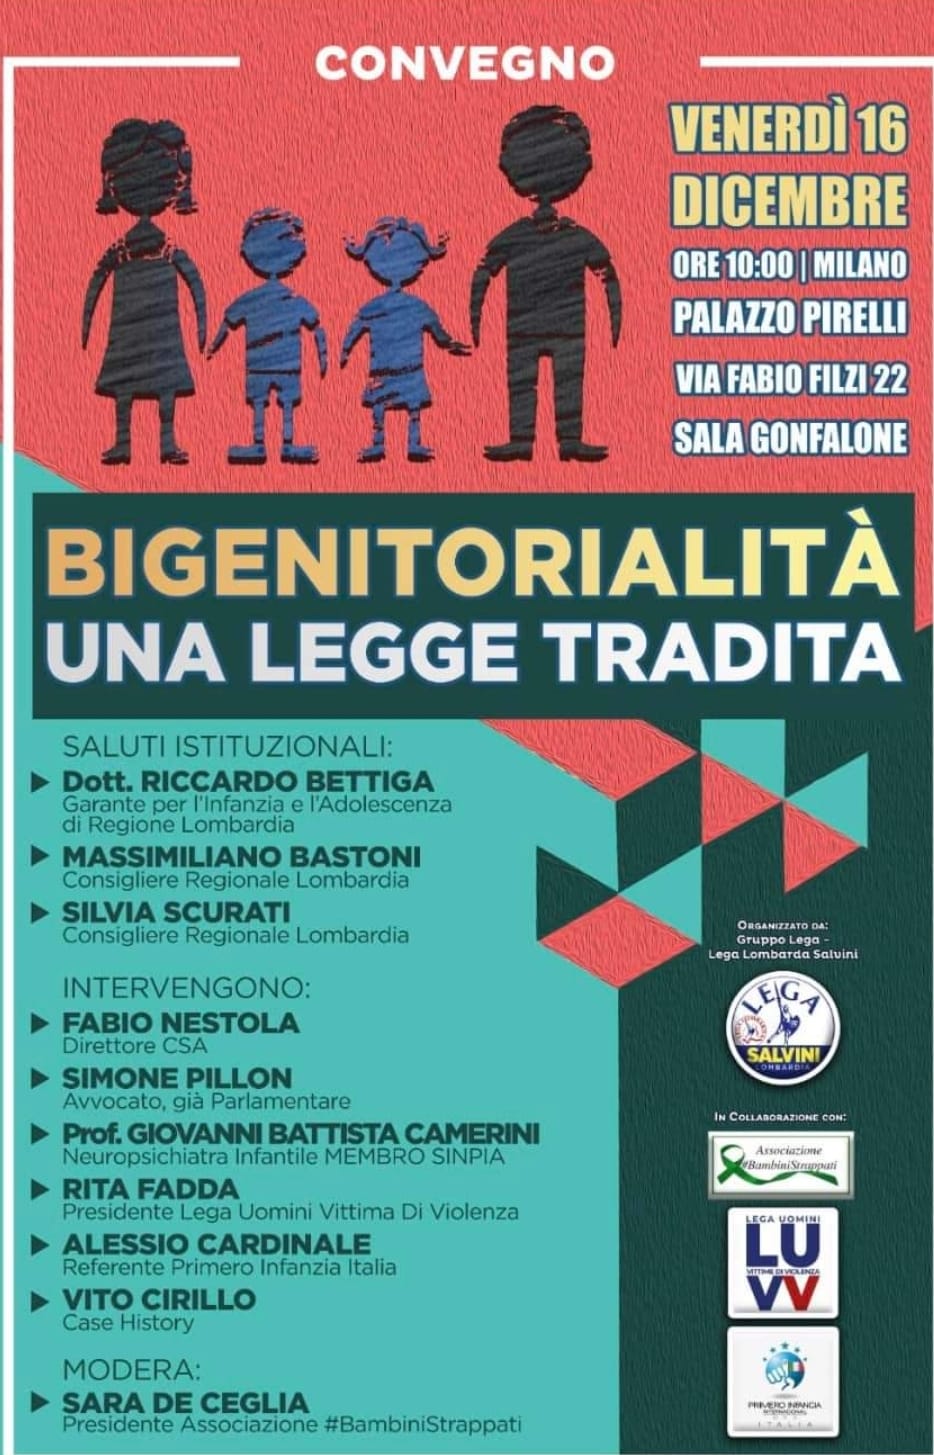 Convegno “Bigenitorialità Una Legge Tradita” – Milano Venerdì 16 Dicembre Ore 10:00 Palazzo Pirelli –